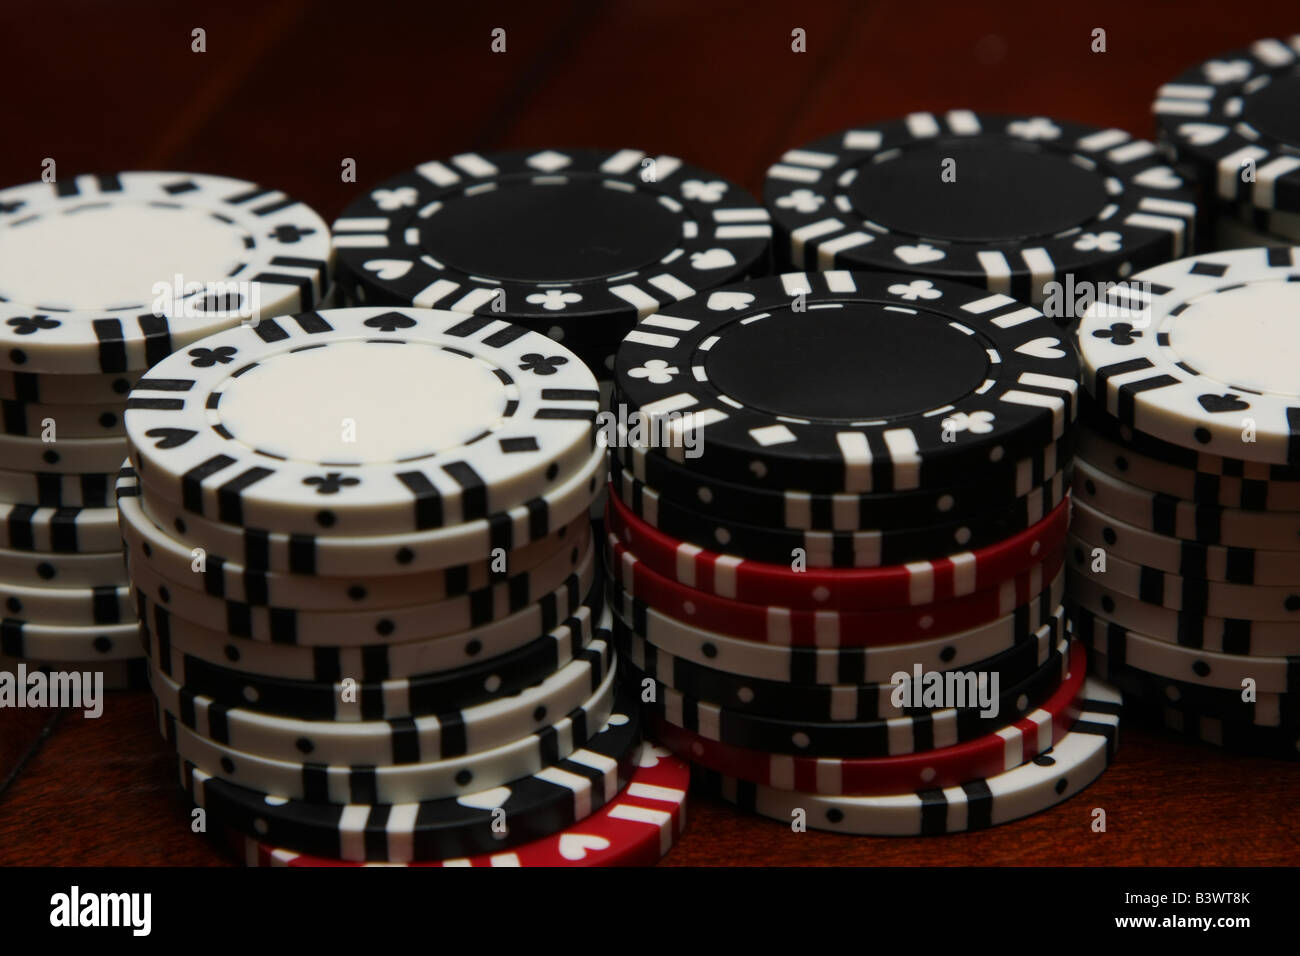 Une pile de rouge, noir et blanc, des jetons de poker utilisés dans un jeux de poker, comme le Texas Holdem, Omaha, stud, razz et blackjack. Banque D'Images